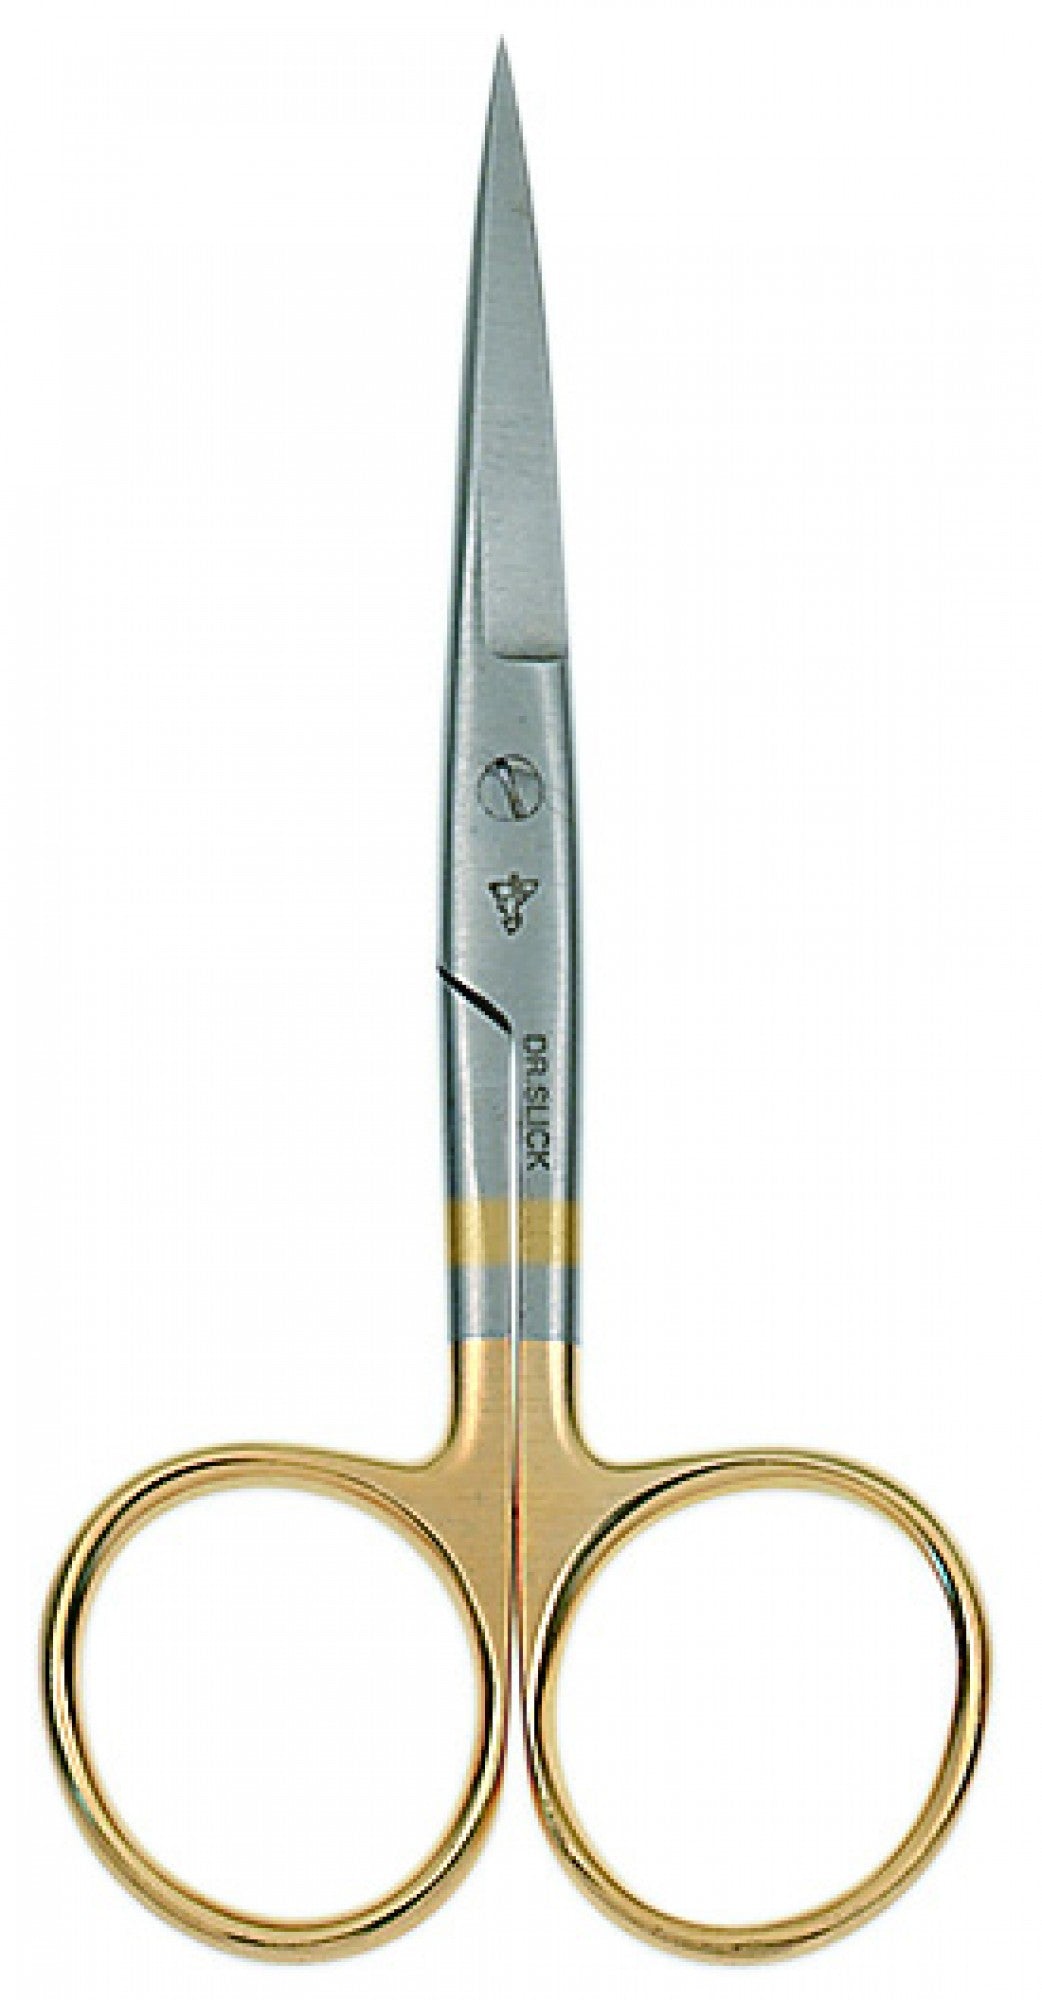 Dr. Slick 4-1/2" Hair Scissor